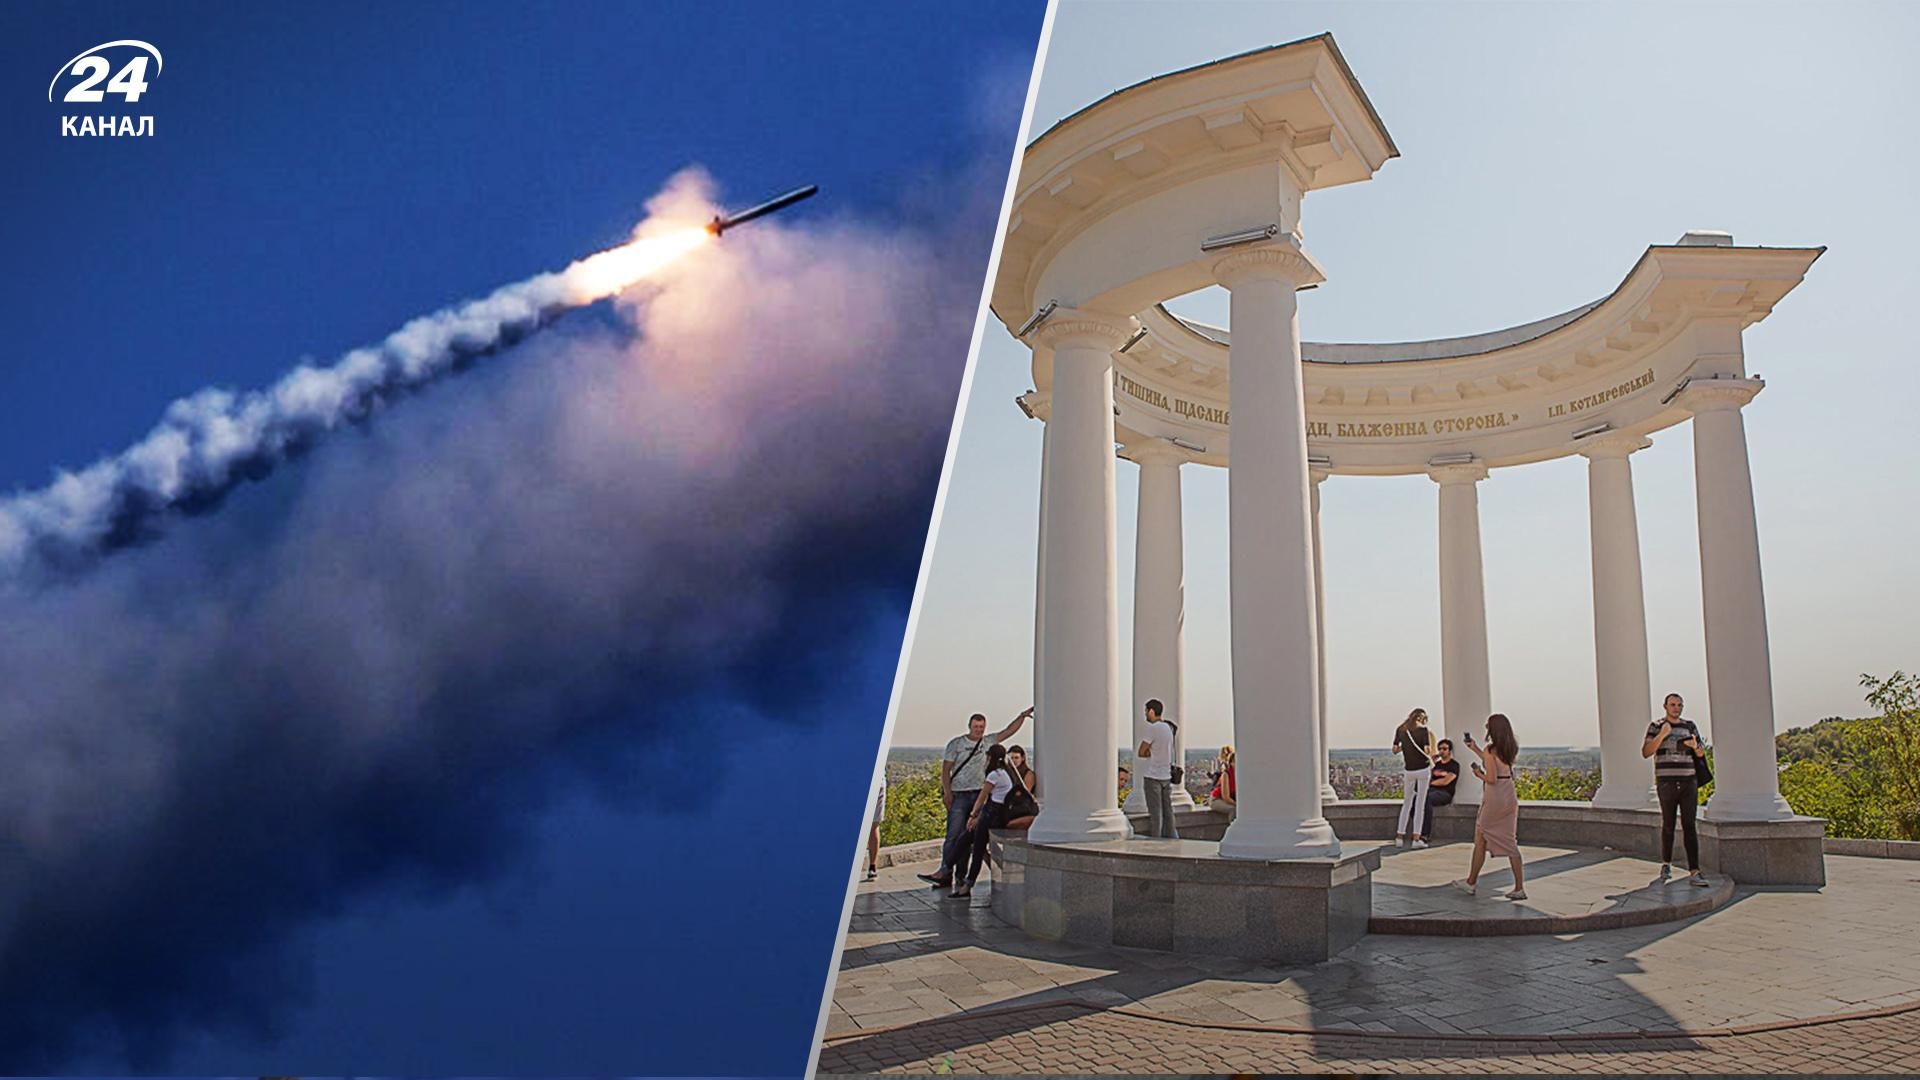 В небе над Полтавщиной ВСУ сбили вражескую ракету